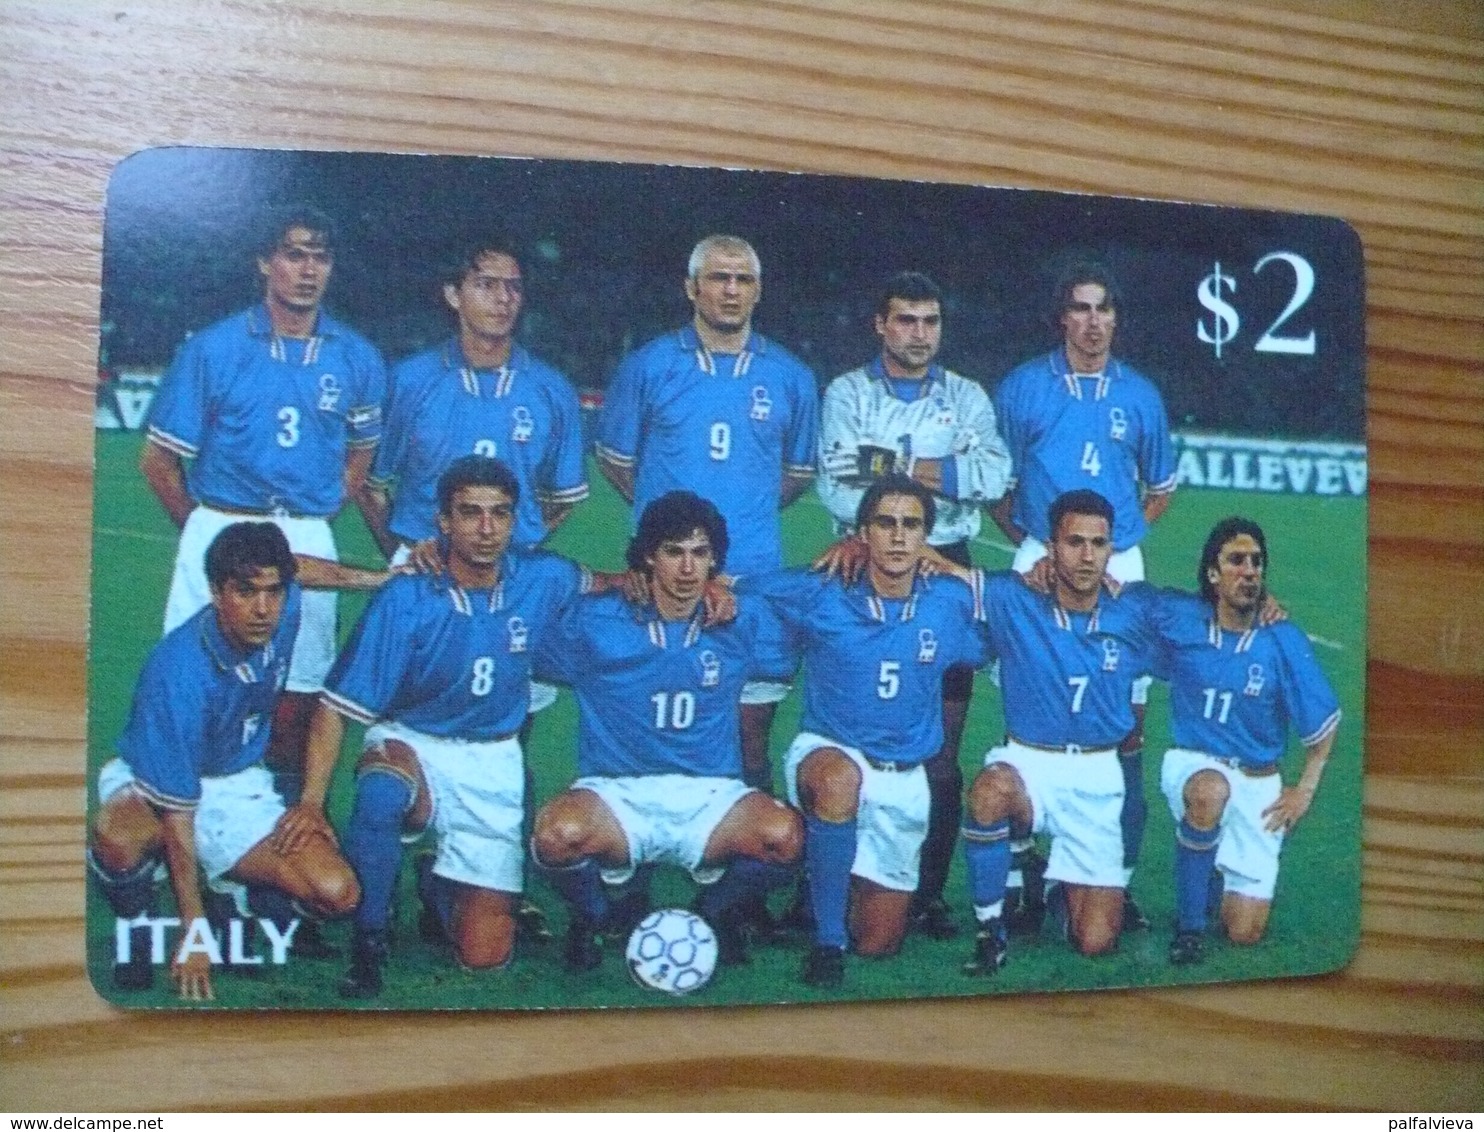 Prepaid Phonecard USA, Sprint - France '98 Football World Cup, Team Of Italy - Sprint